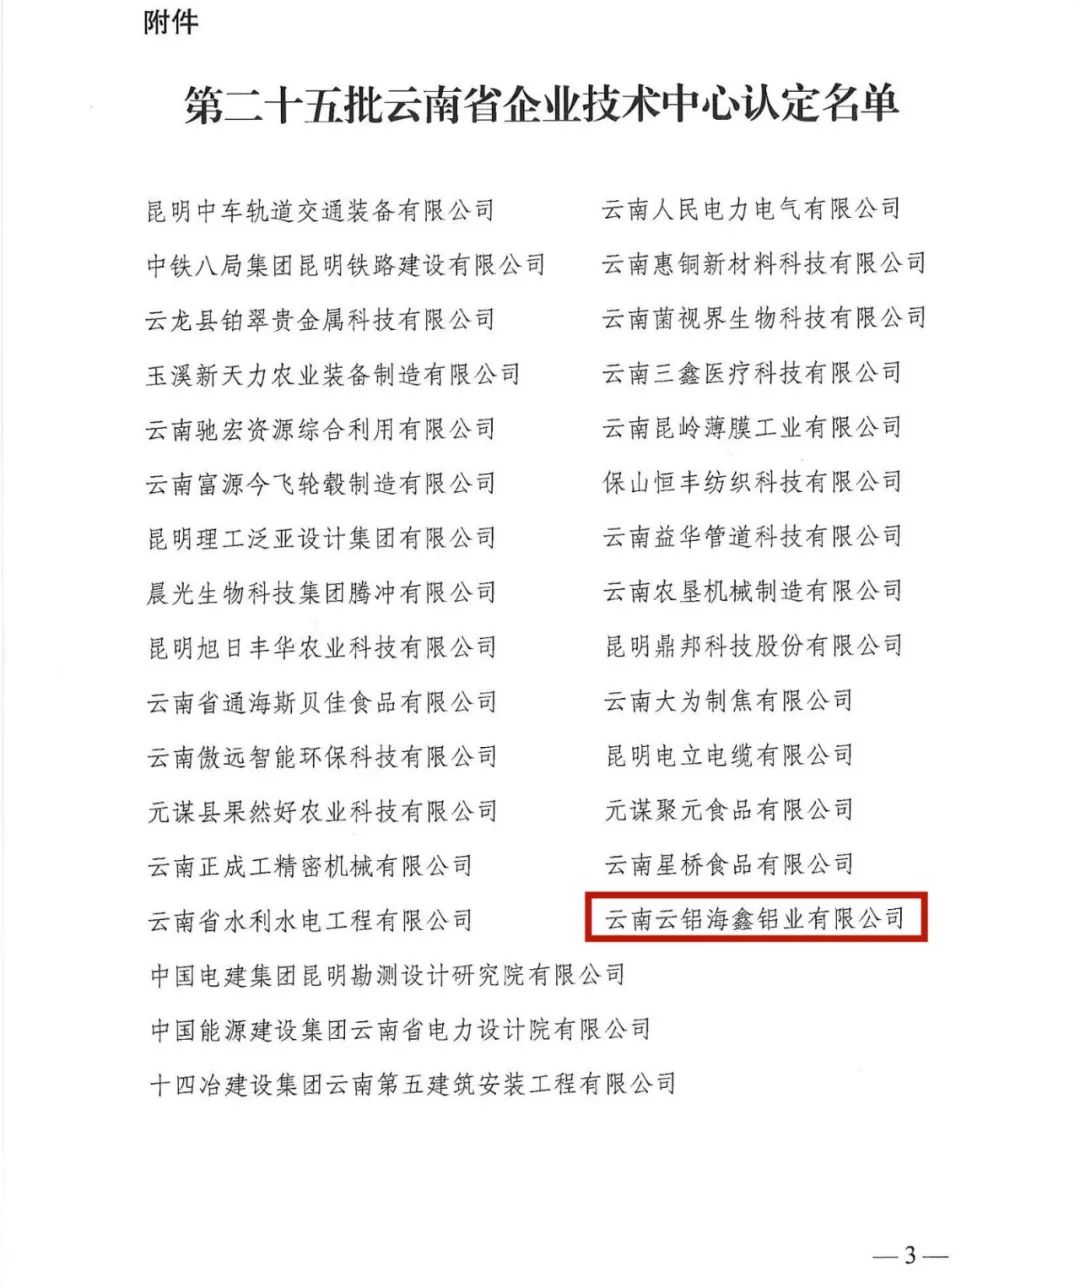 雲鋁海鑫順利通過雲南省企業技術中心認證